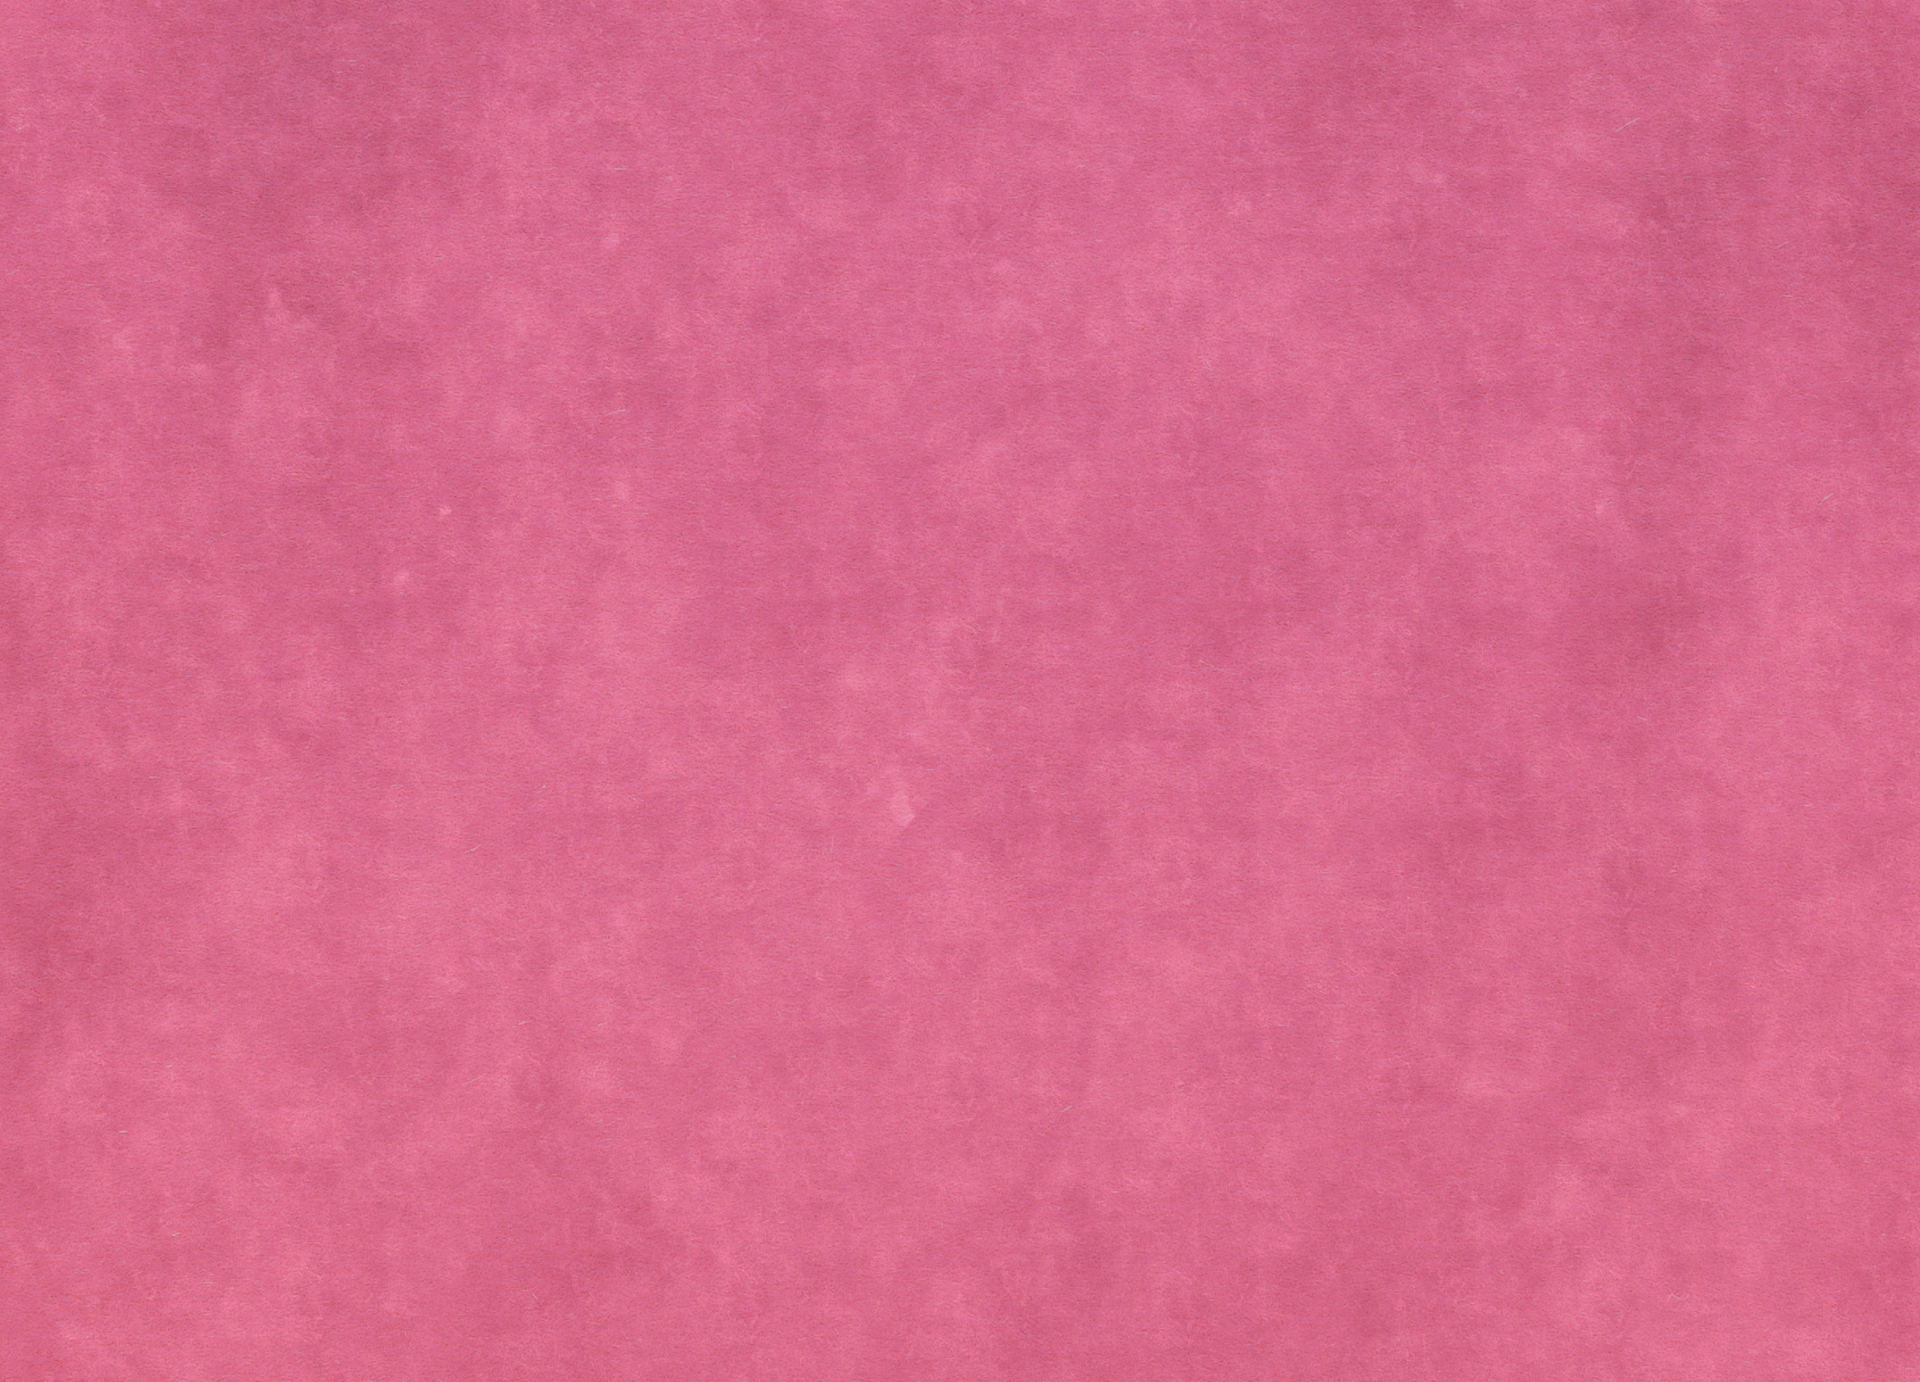 Pink Vintage Paper Background